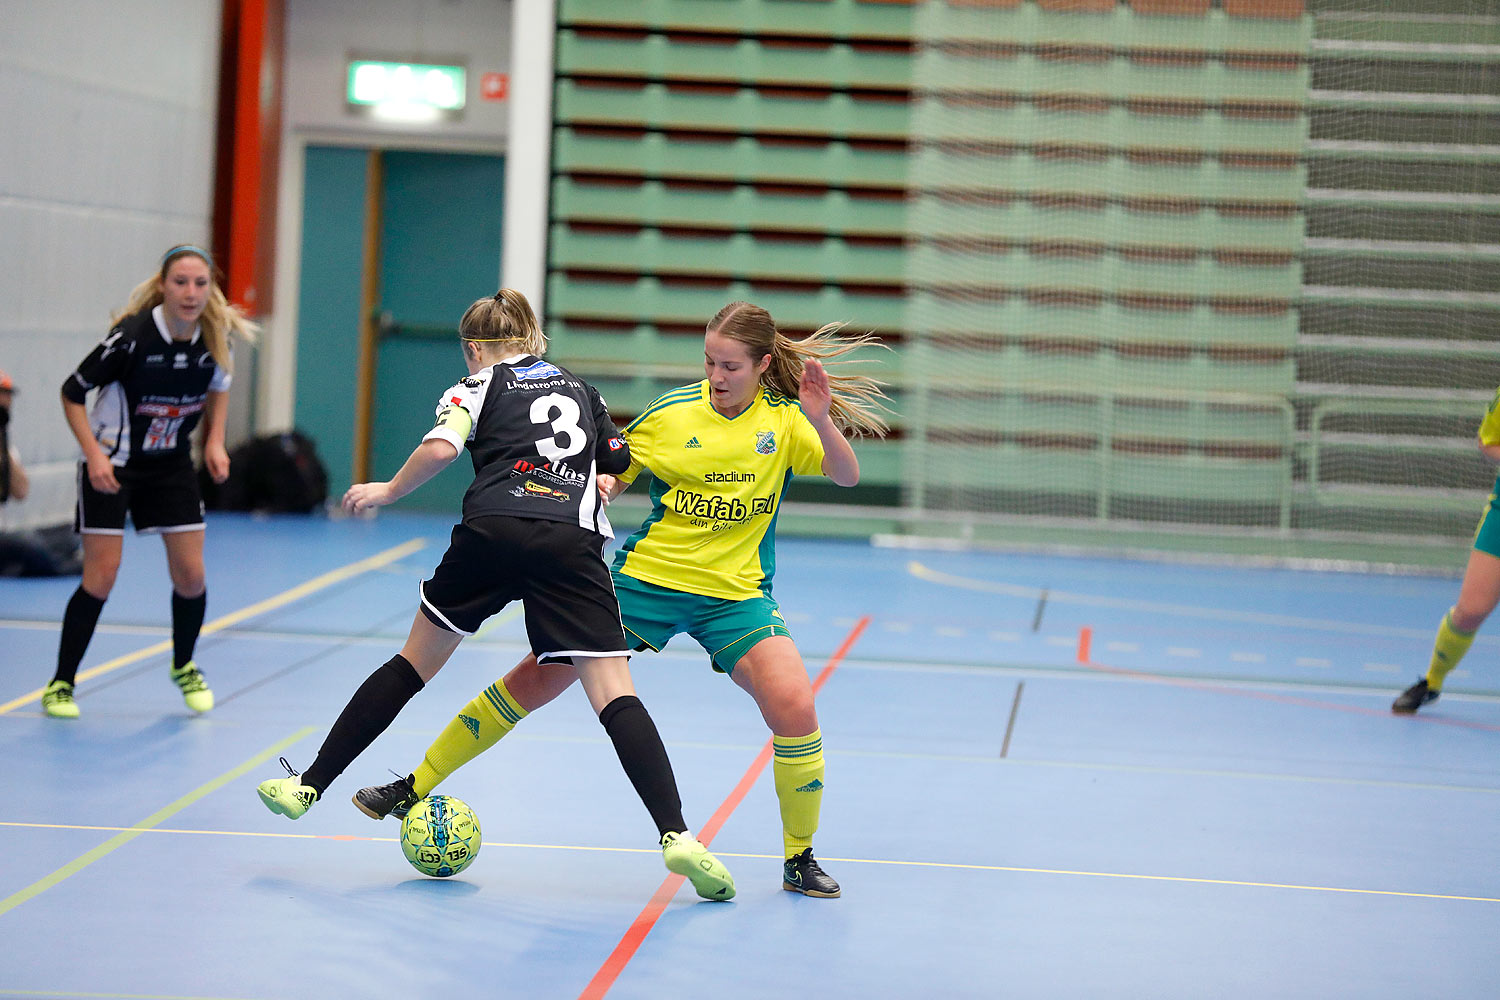 Skövde Futsalcup Damer Hertzöga BK 1-Skövde KIK,dam,Arena Skövde,Skövde,Sverige,Skövde Futsalcup 2016,Futsal,2016,141744